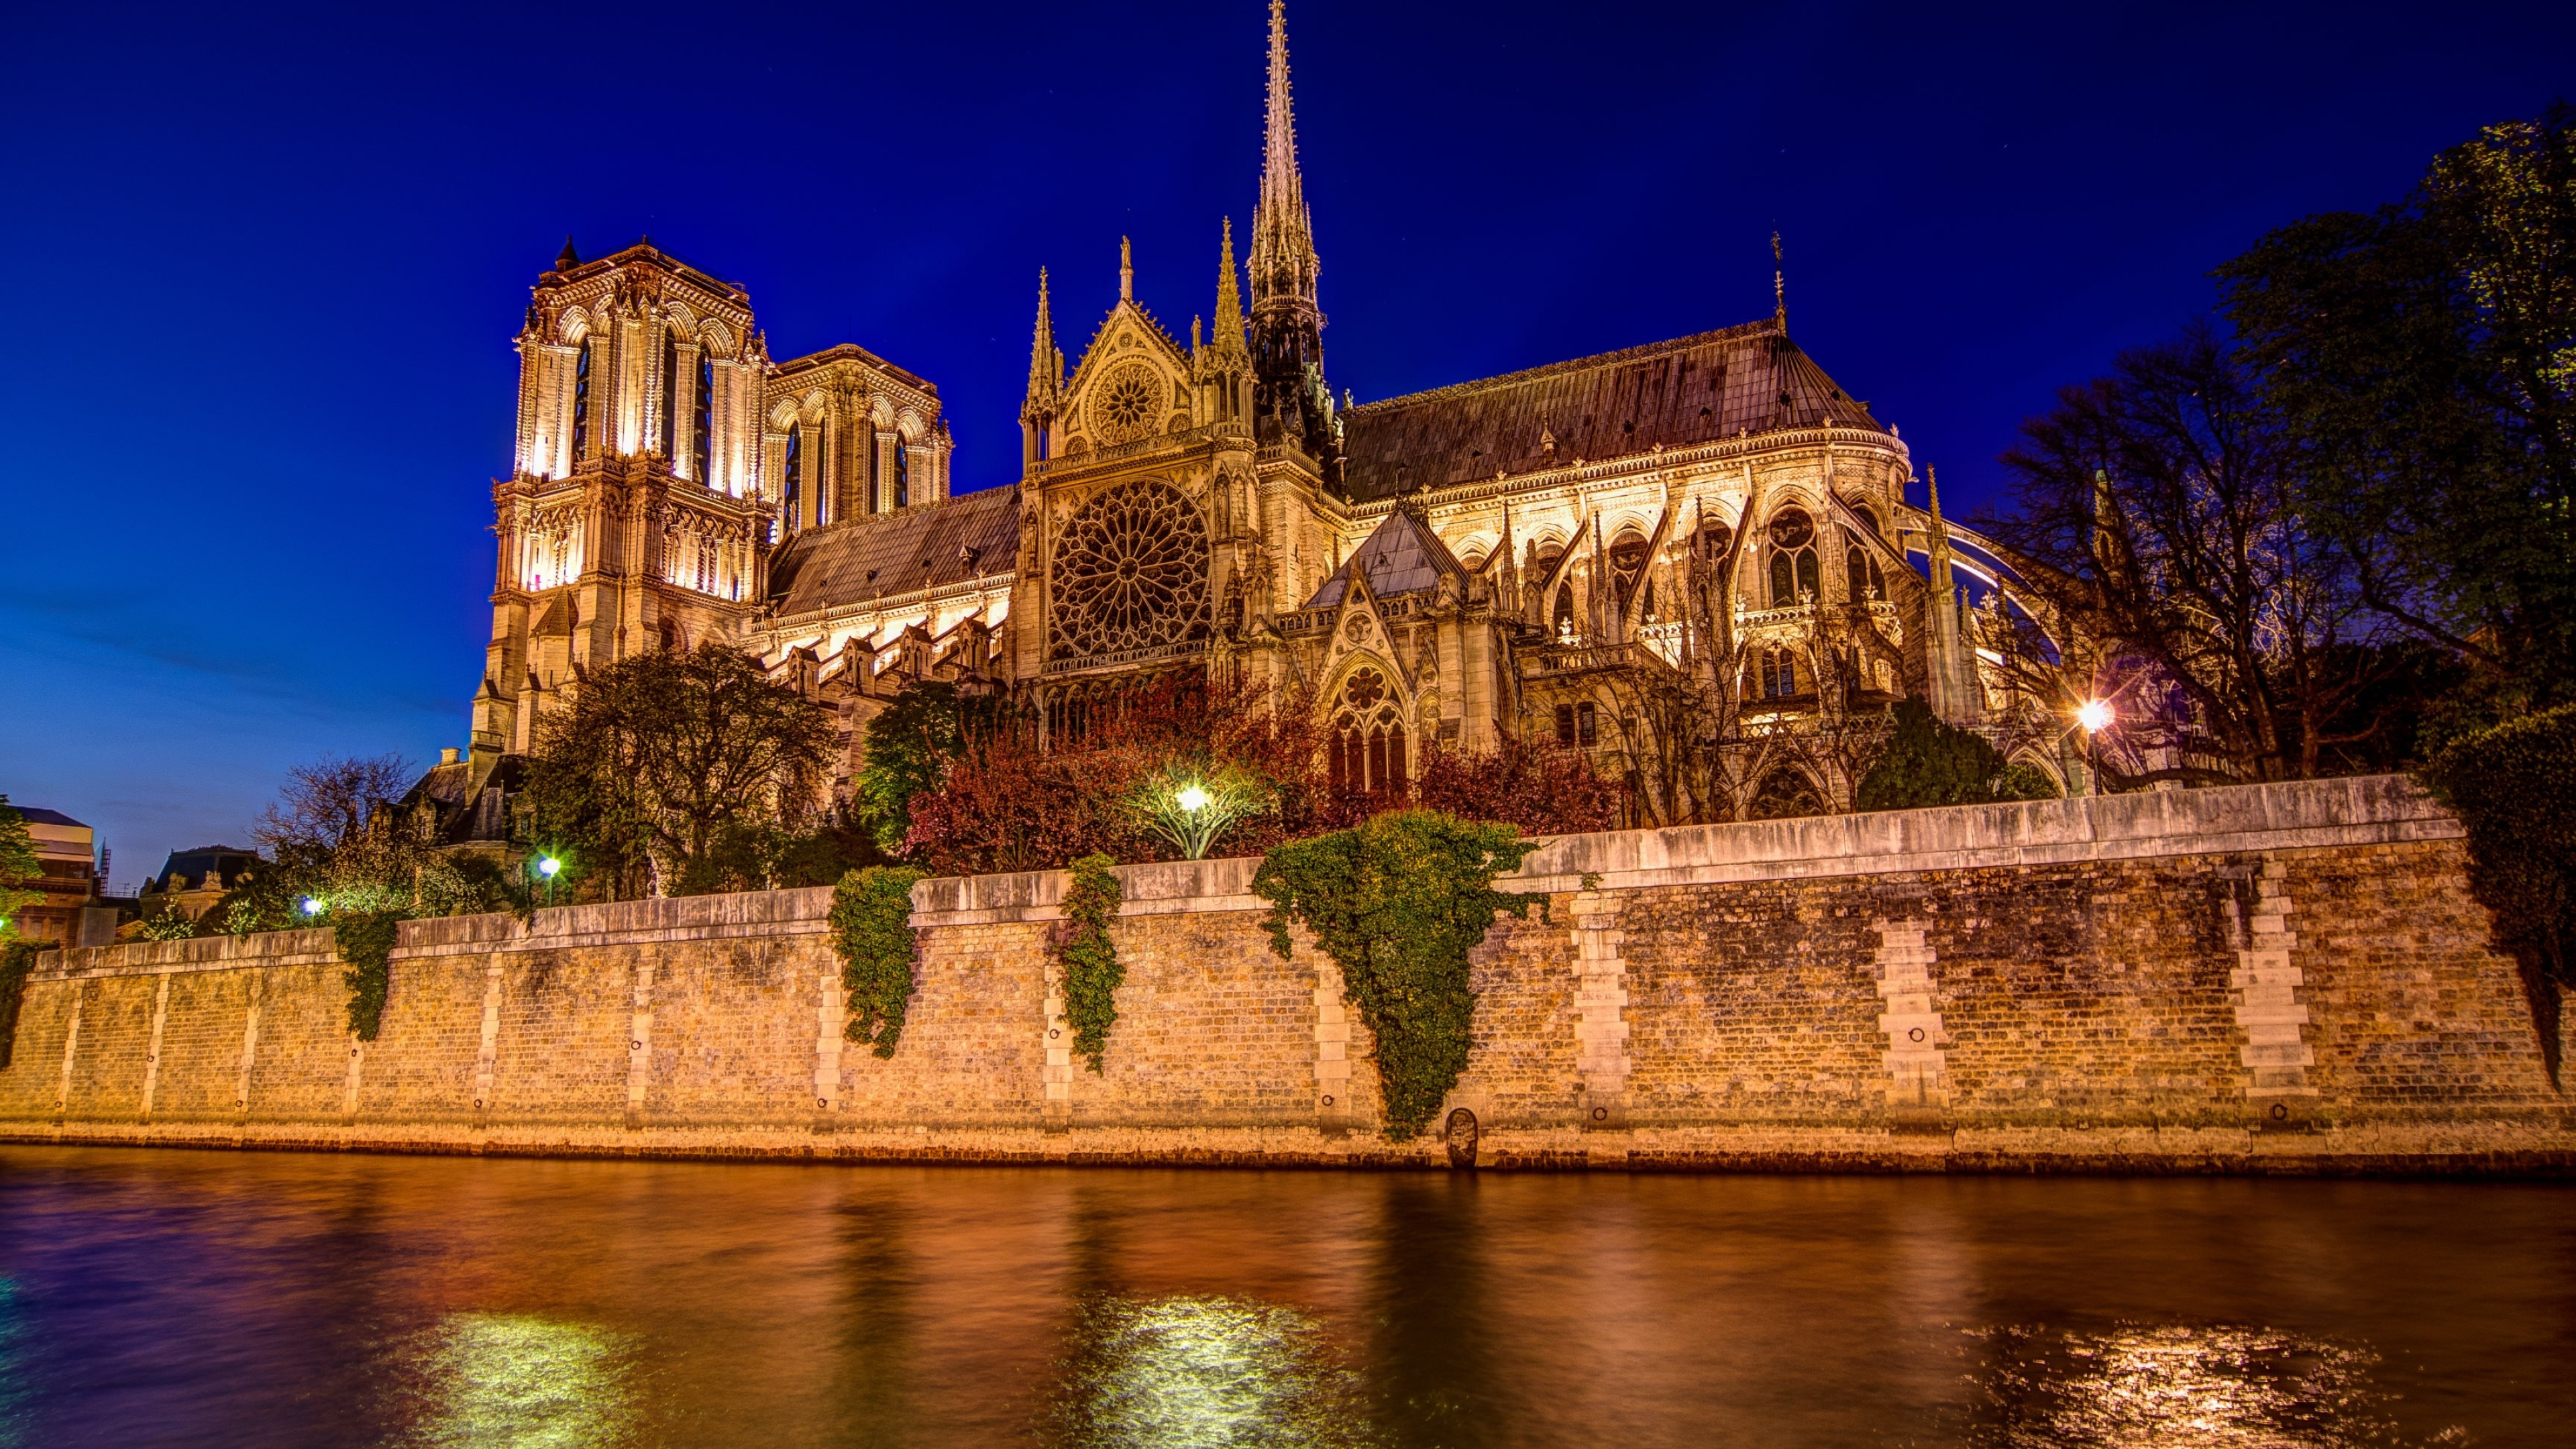 Notre-Dame Cathedral, Notre dame de paris wallpapers, Notre-Dame de Paris wallpapers, 3840x2160 4K Desktop